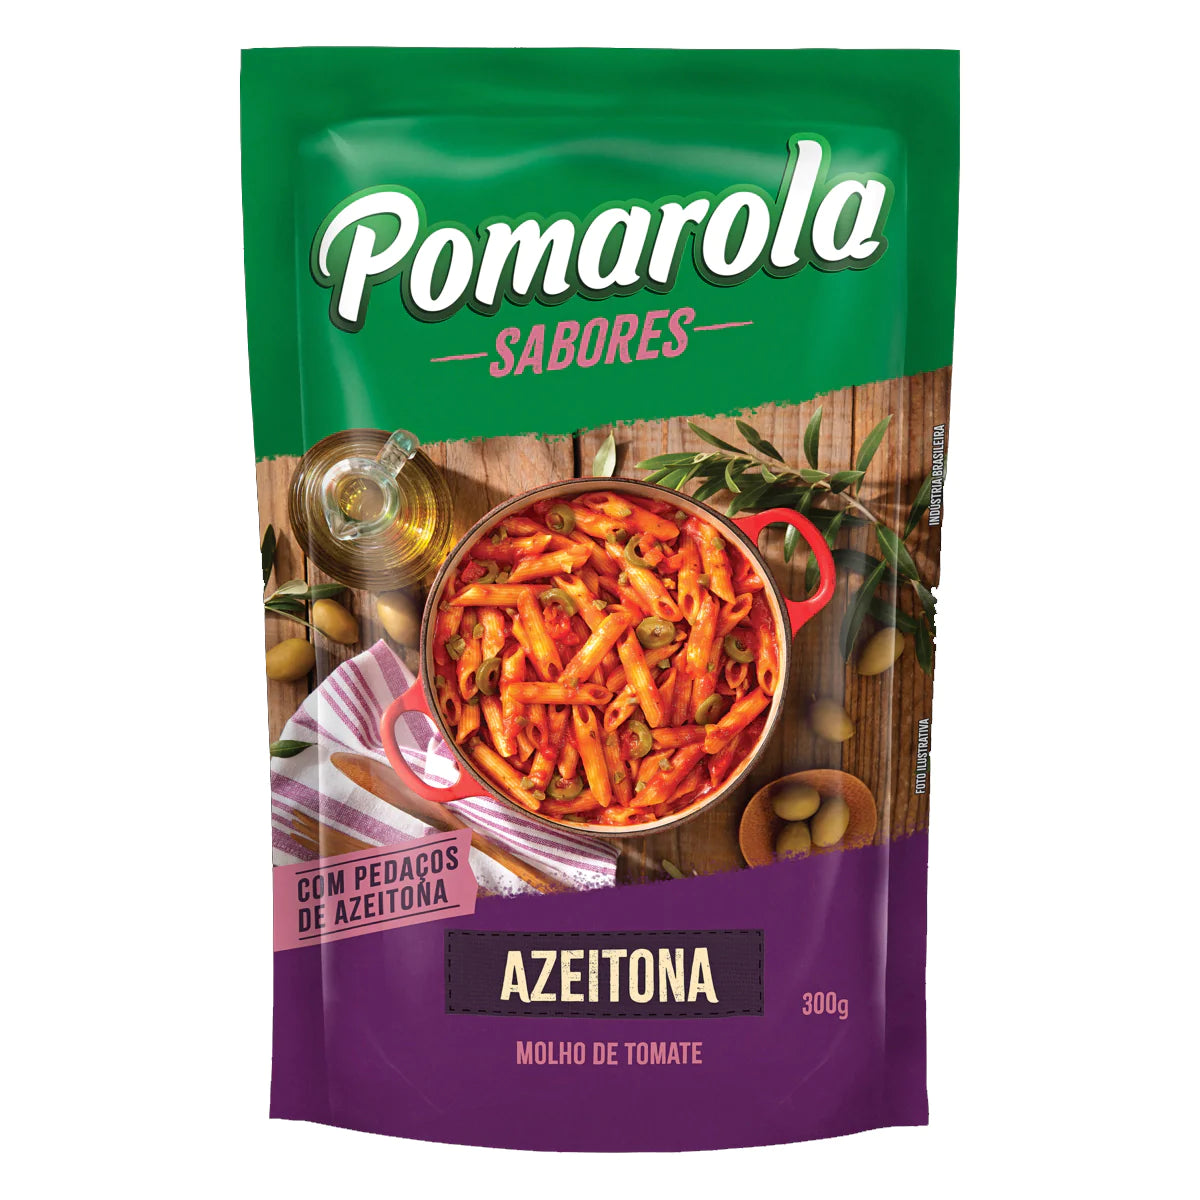 POMAROLA - Molho de tomate tradicional "caseiro" alho e azeitonas - 300g